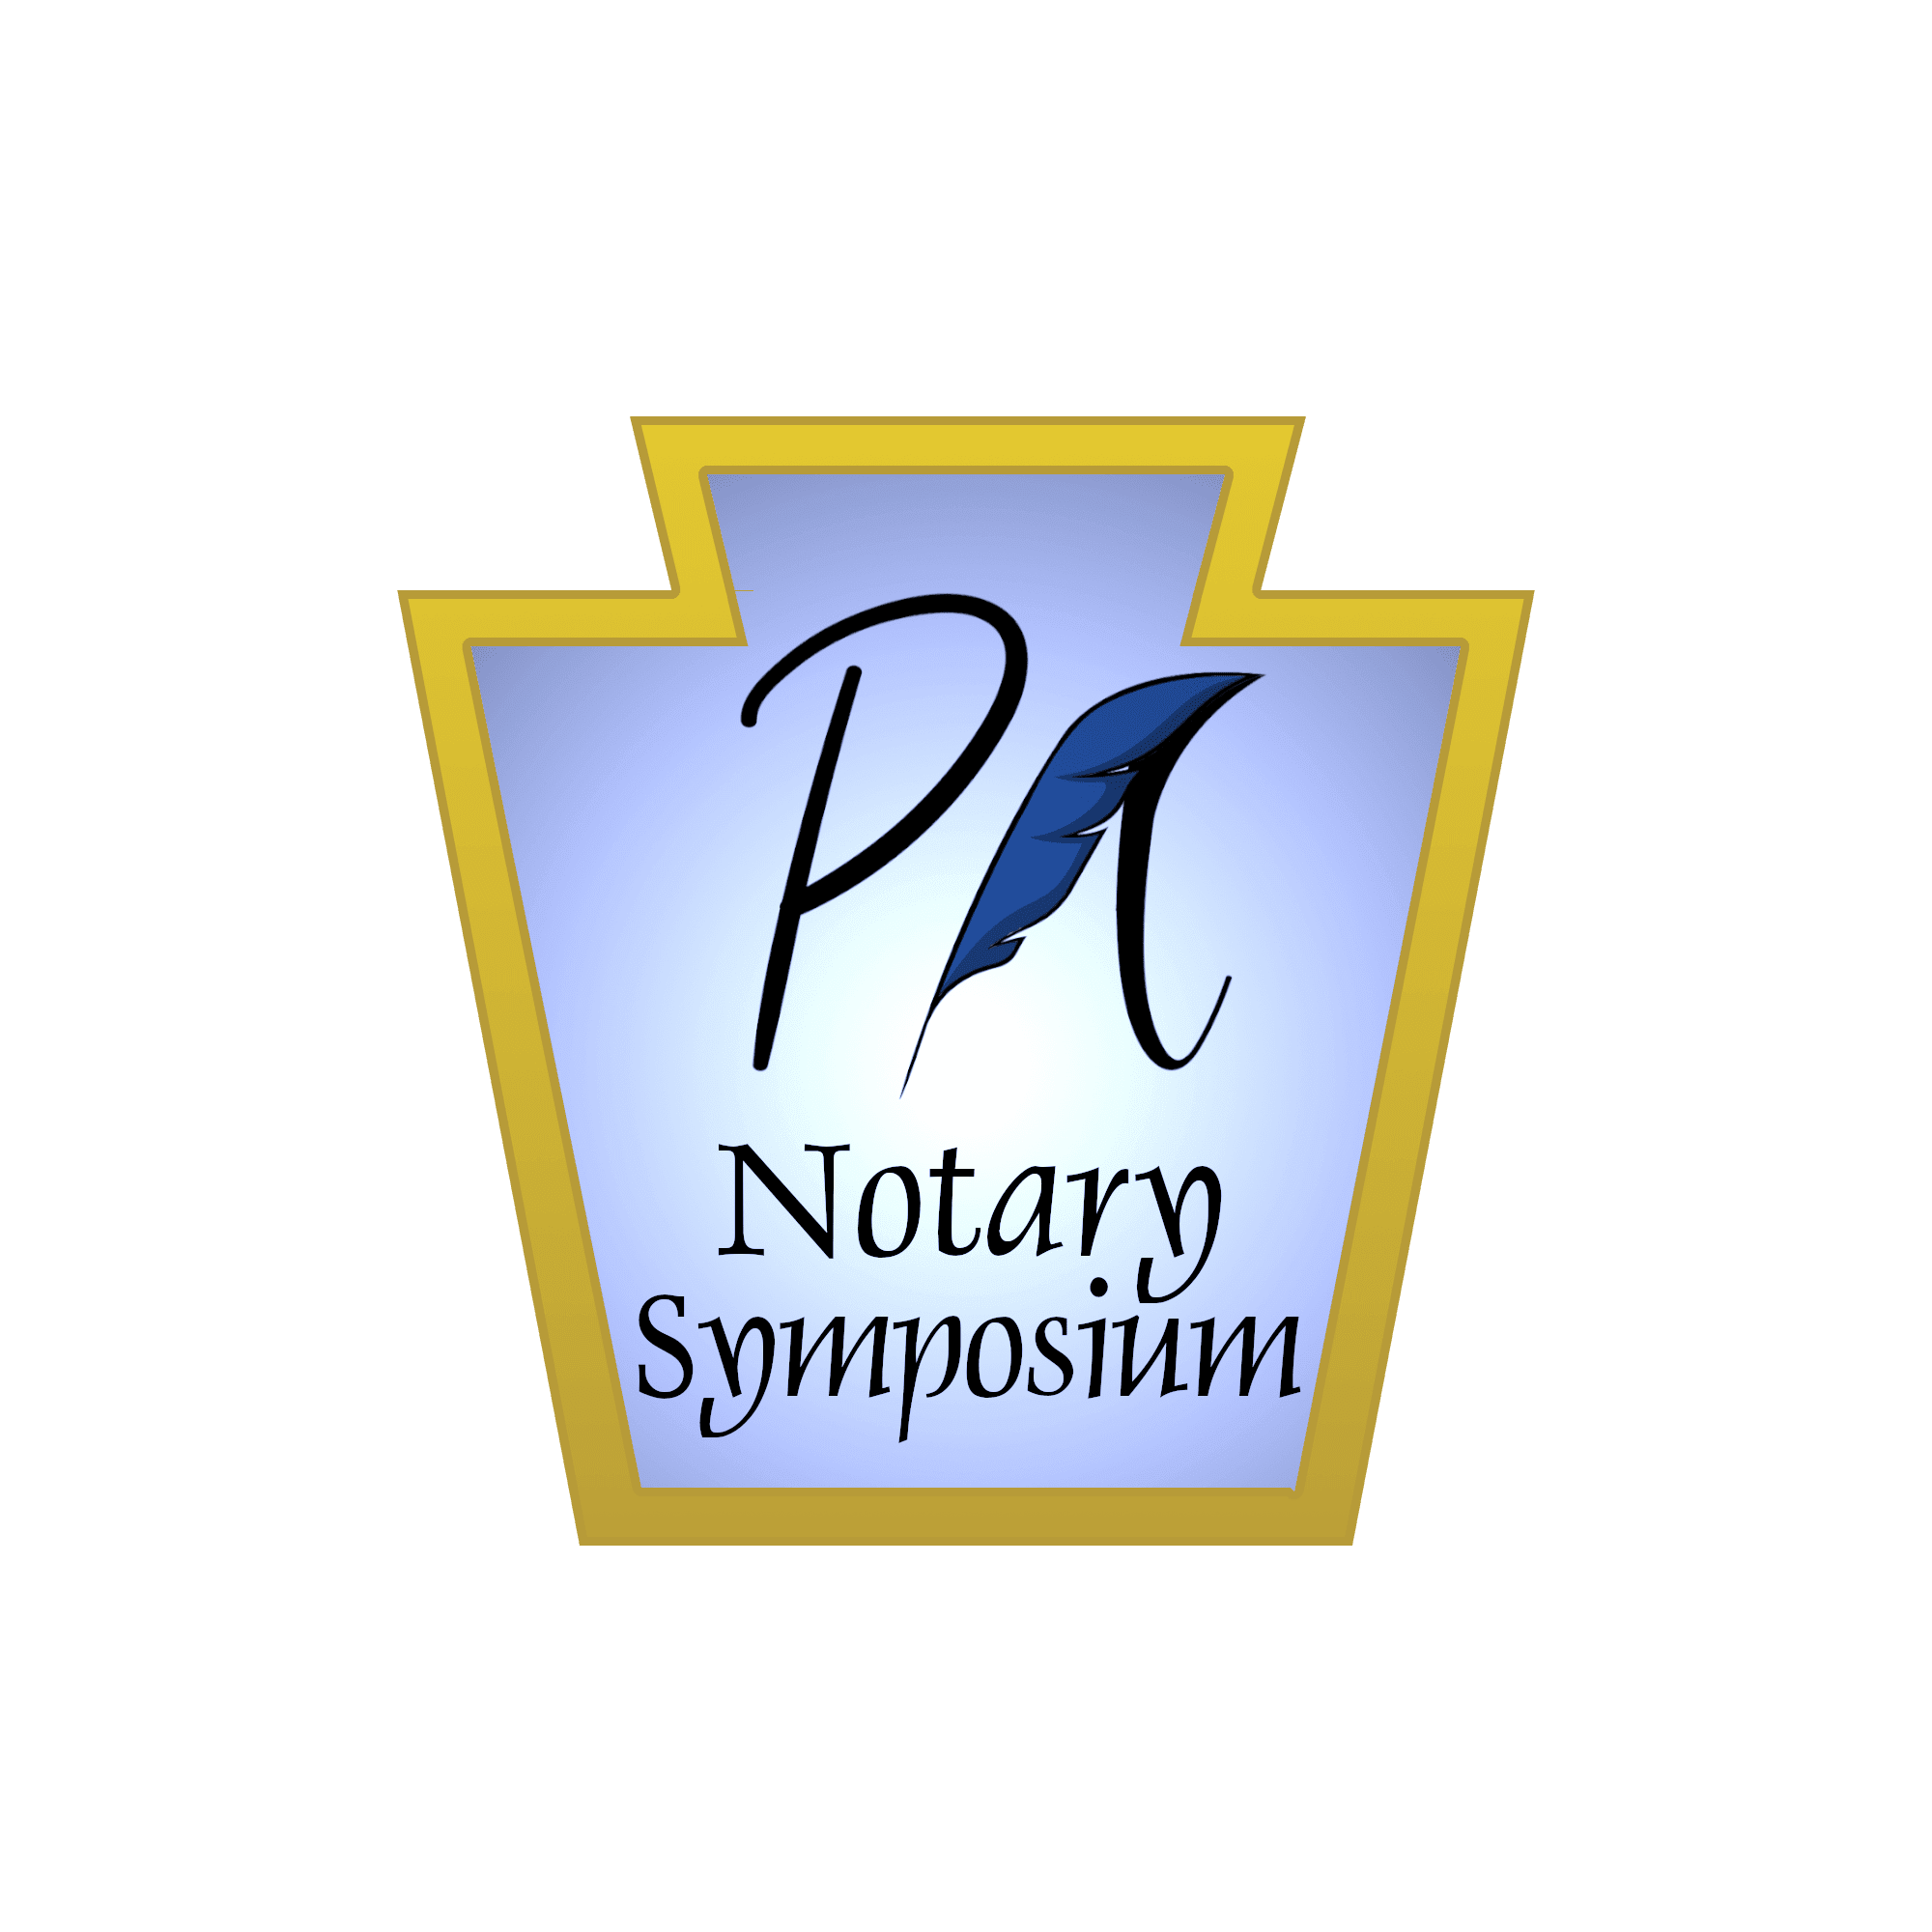 Pennsylvania Notary Symposium